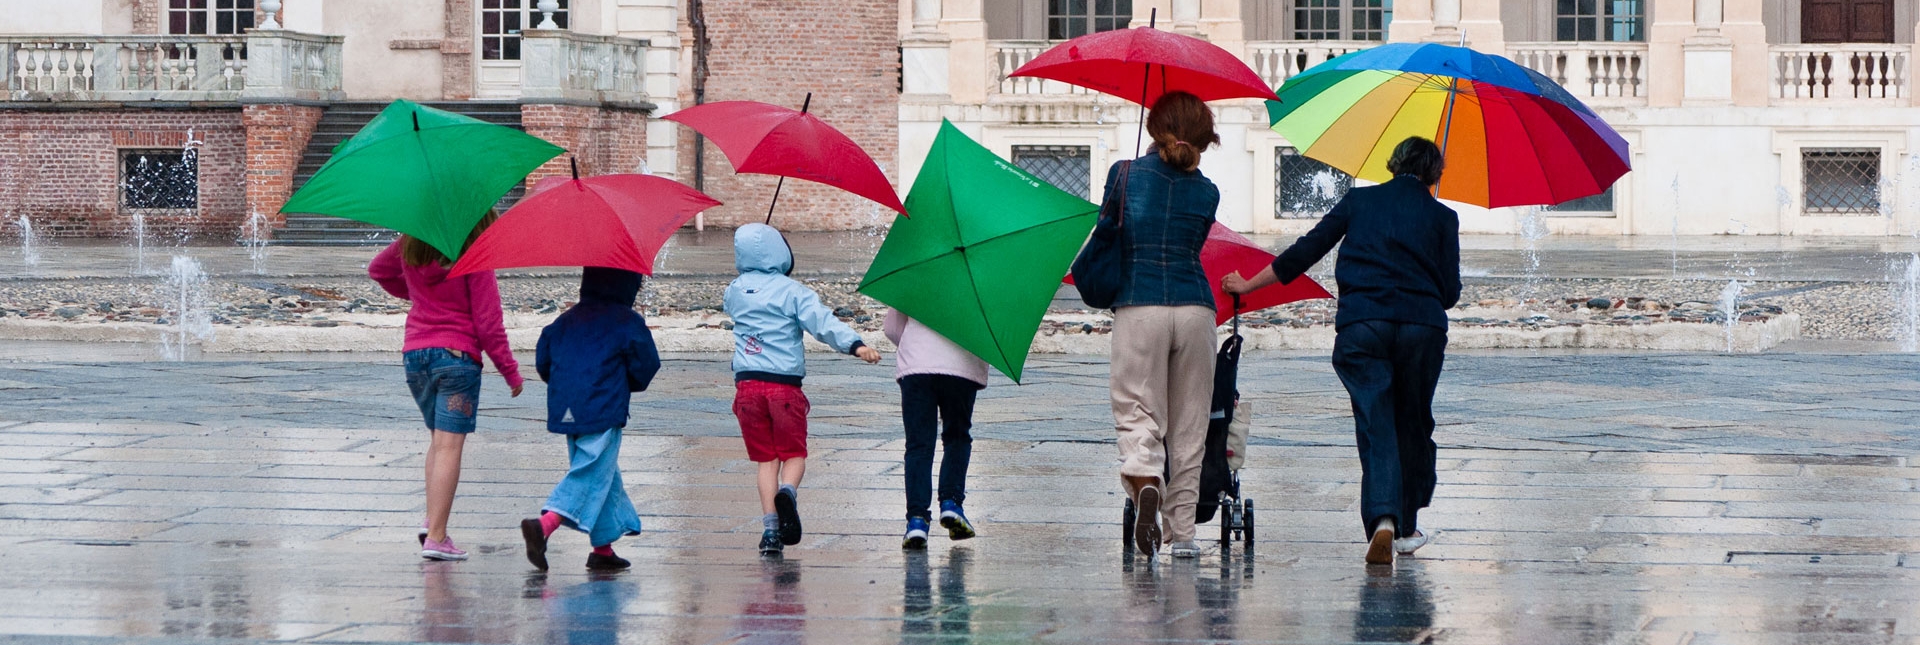 Visitatori con ombrelli colorati nella Corte d'onore